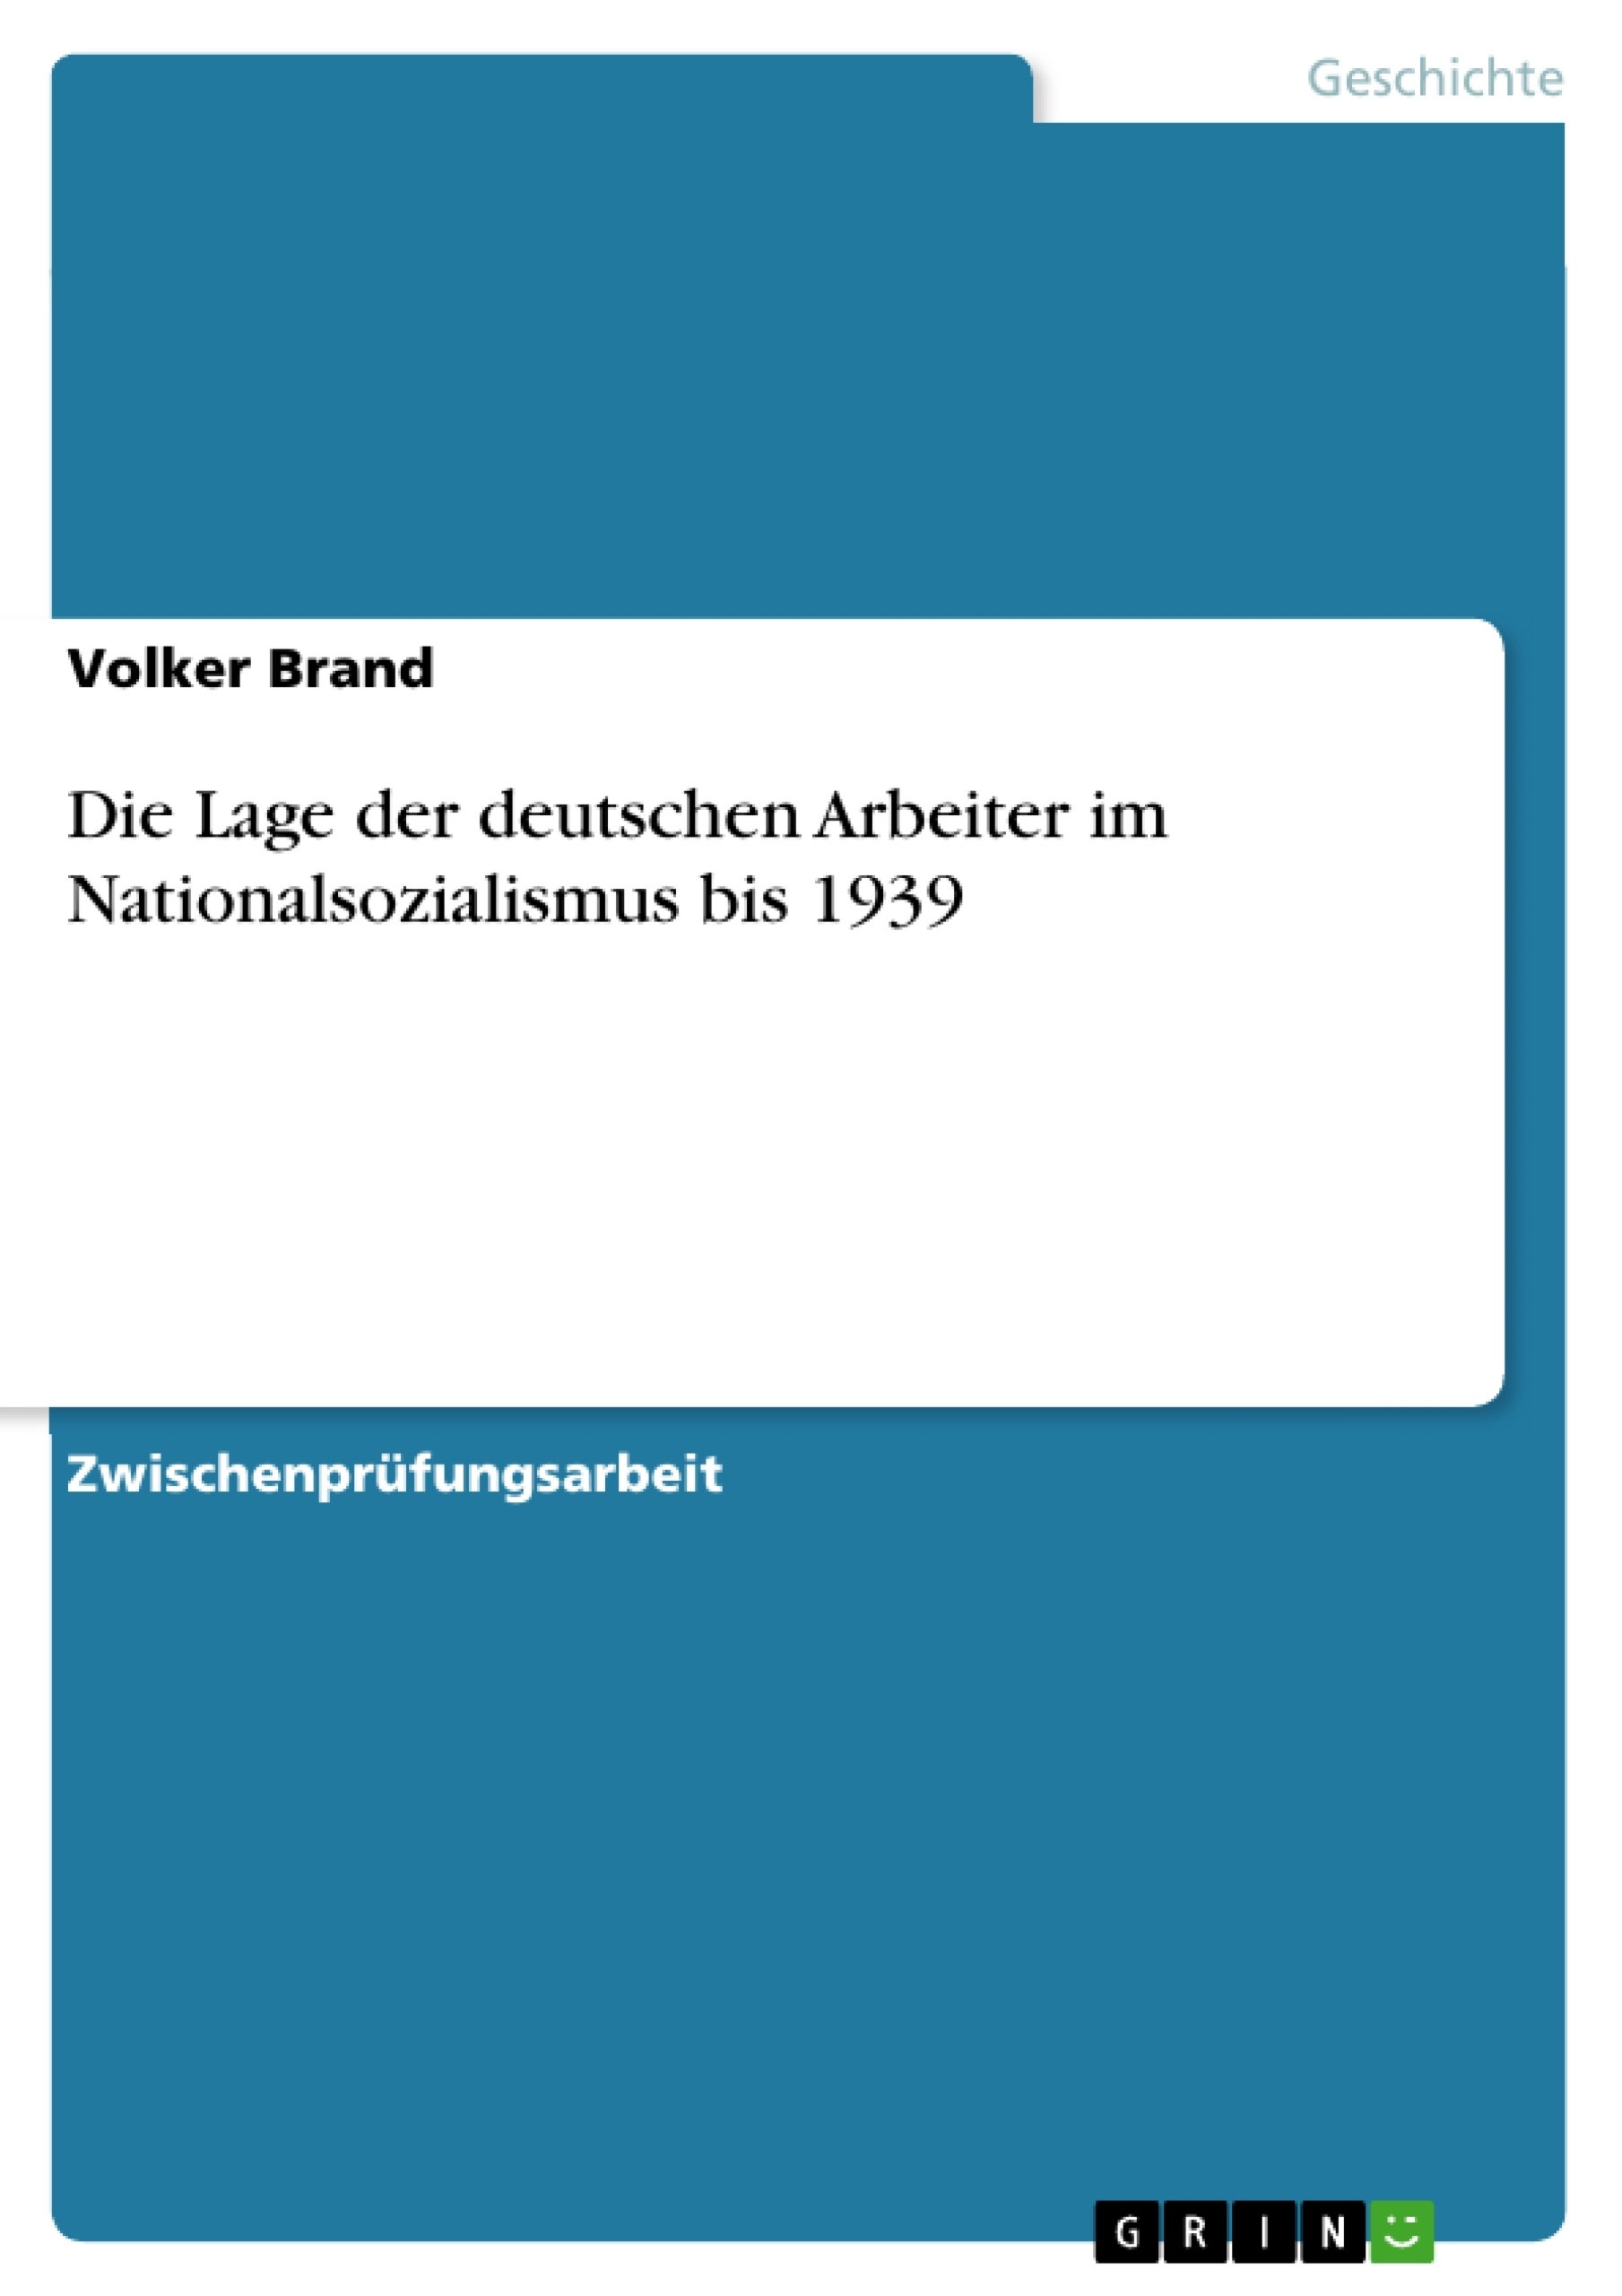 Title: Die Lage der deutschen Arbeiter im Nationalsozialismus bis 1939